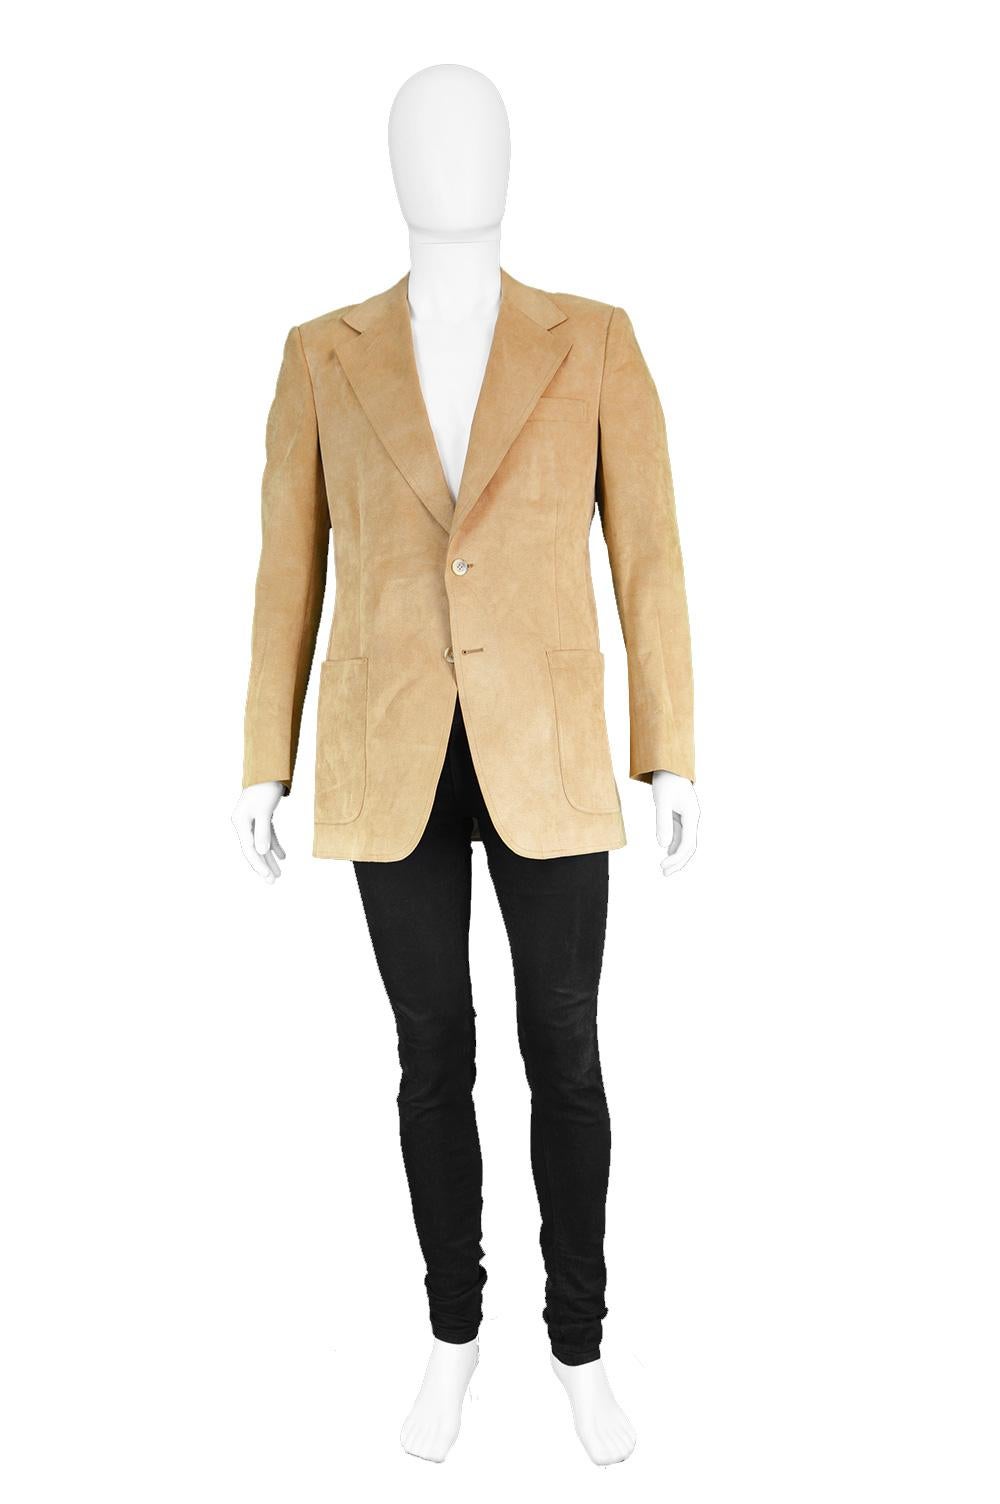 Halston Men's Vintage Ultrasuede 'Halsuede' Brown Sport Coat, 1970s

Size: fits roughly like a modern men's Medium. Please check measurements.
Chest - 40” / 101cm
Waist - 38” / 96cm
Length (Shoulder to Hem) - 30” / 76cm
Shoulder to Shoulder - 18” /